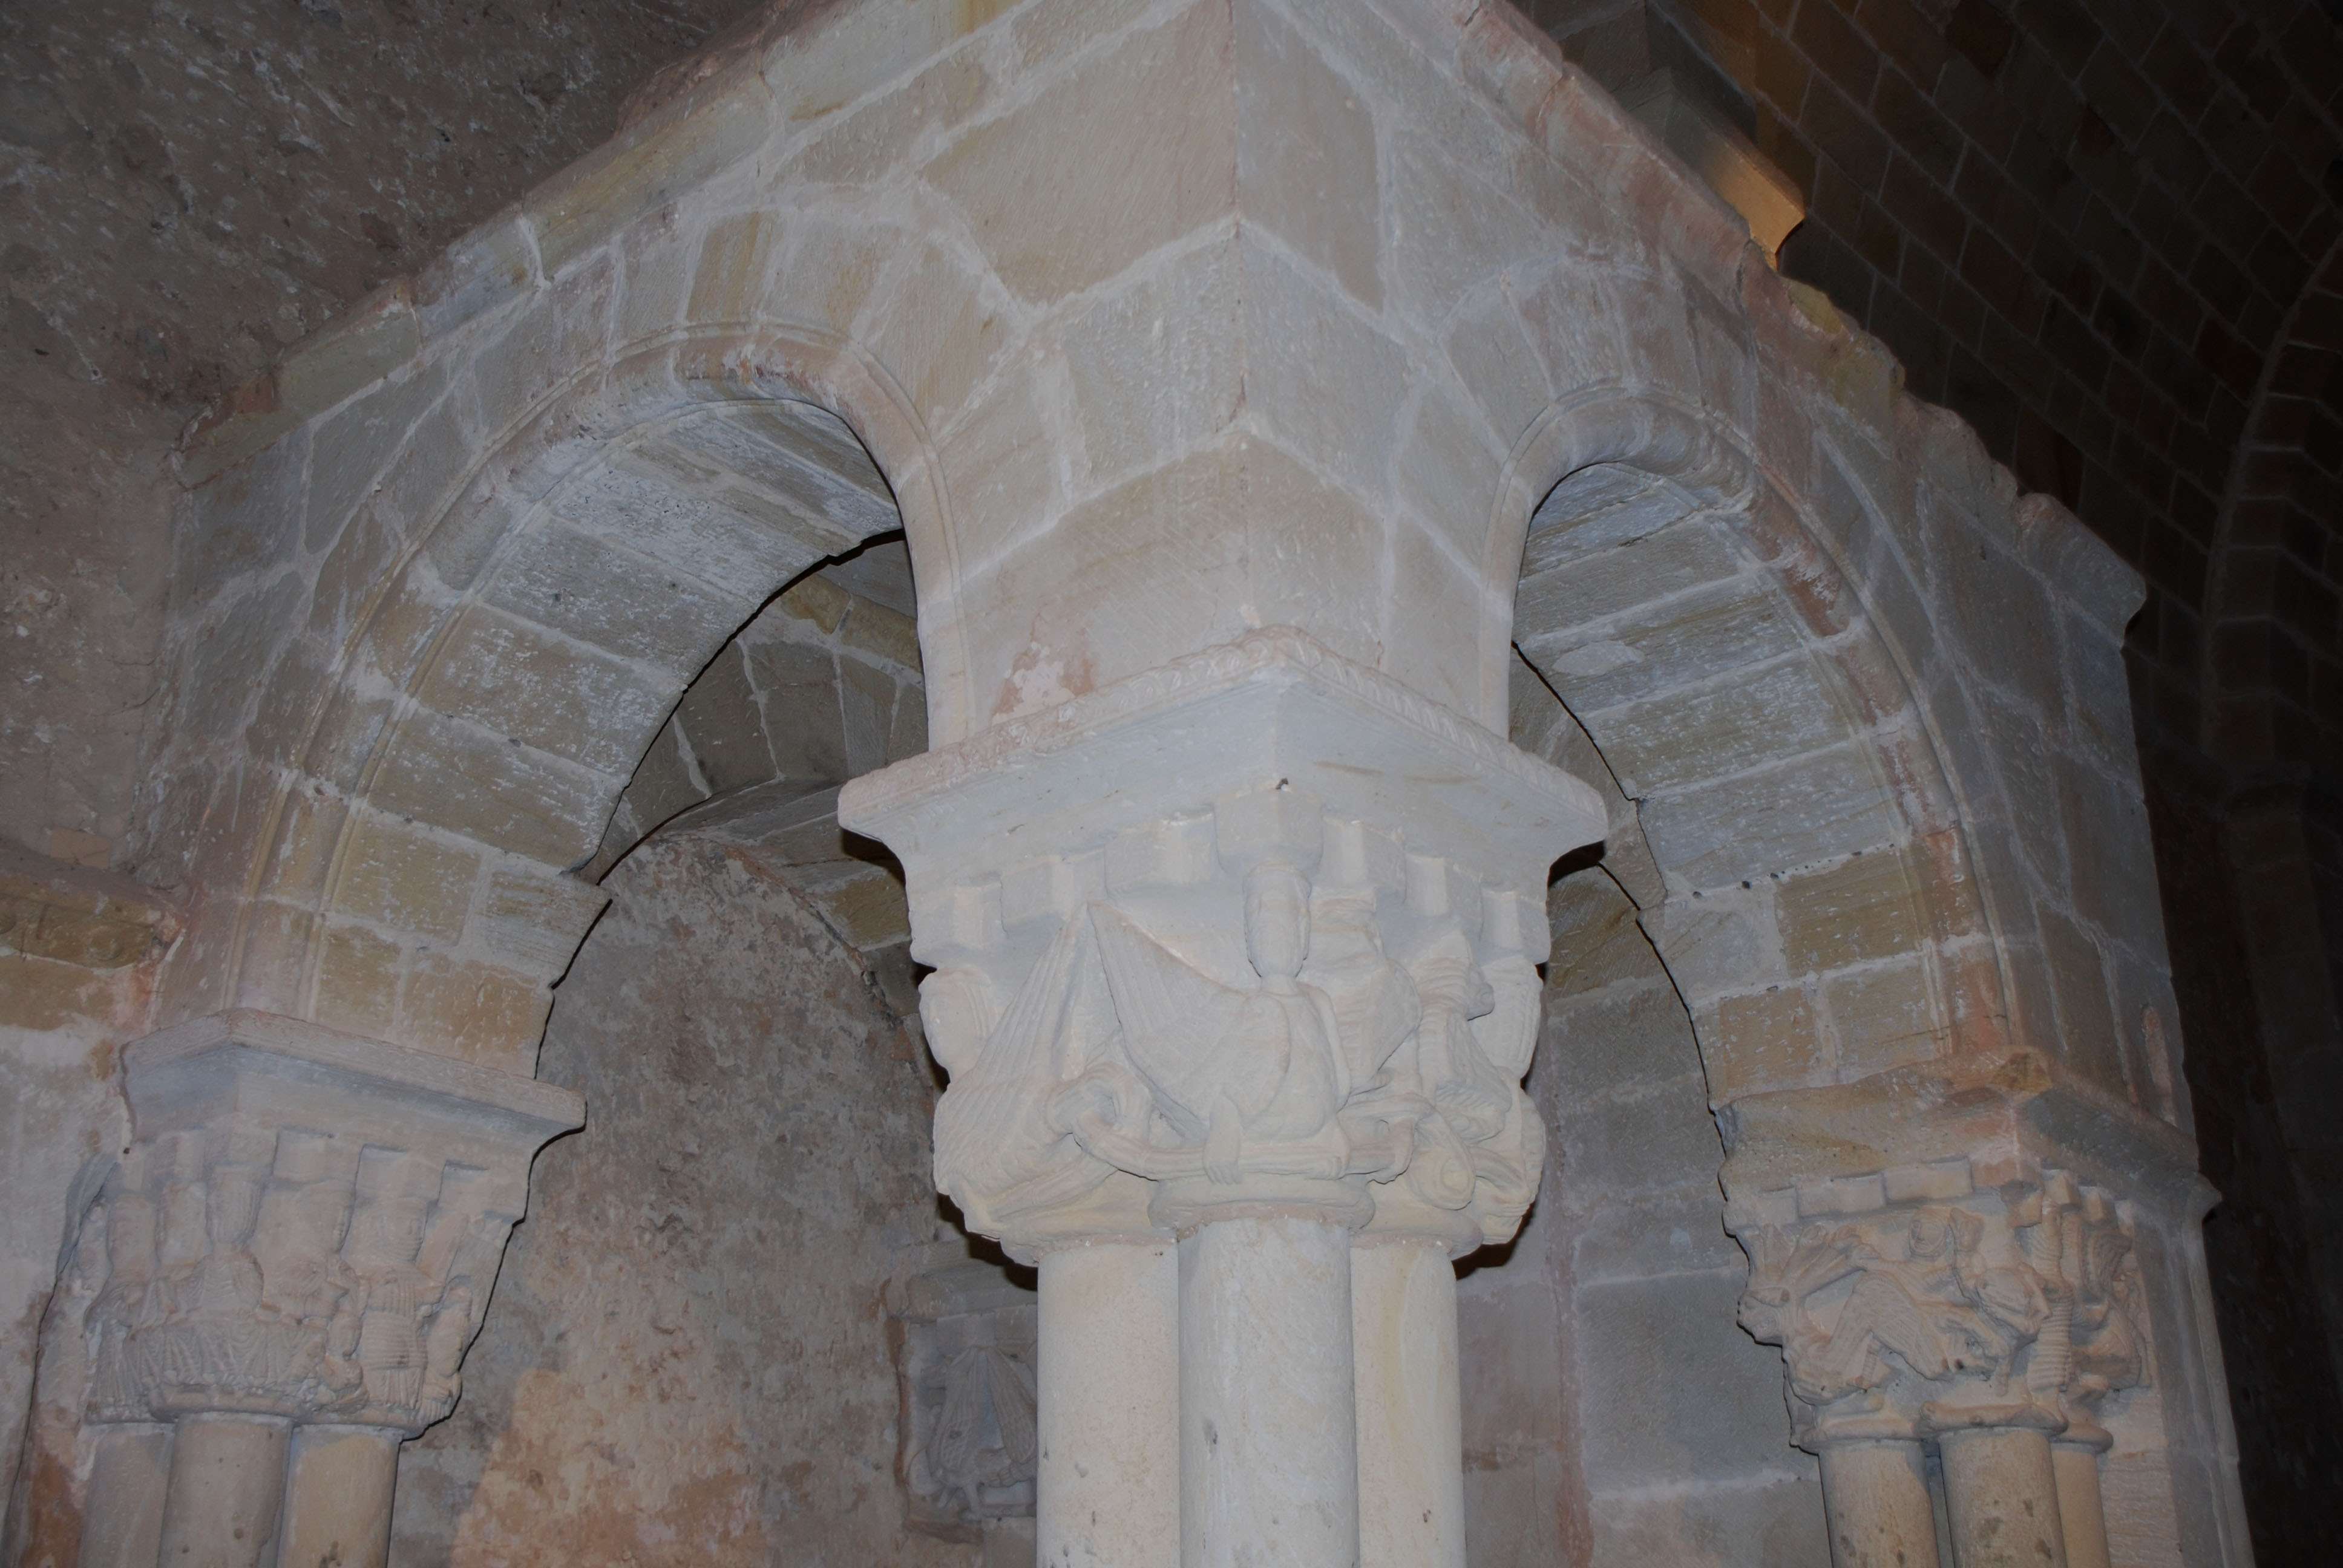 Monasterio de San Juan de Duero. Un enigma - Blogs de España - Monasterio de San Juan de Duero (2)